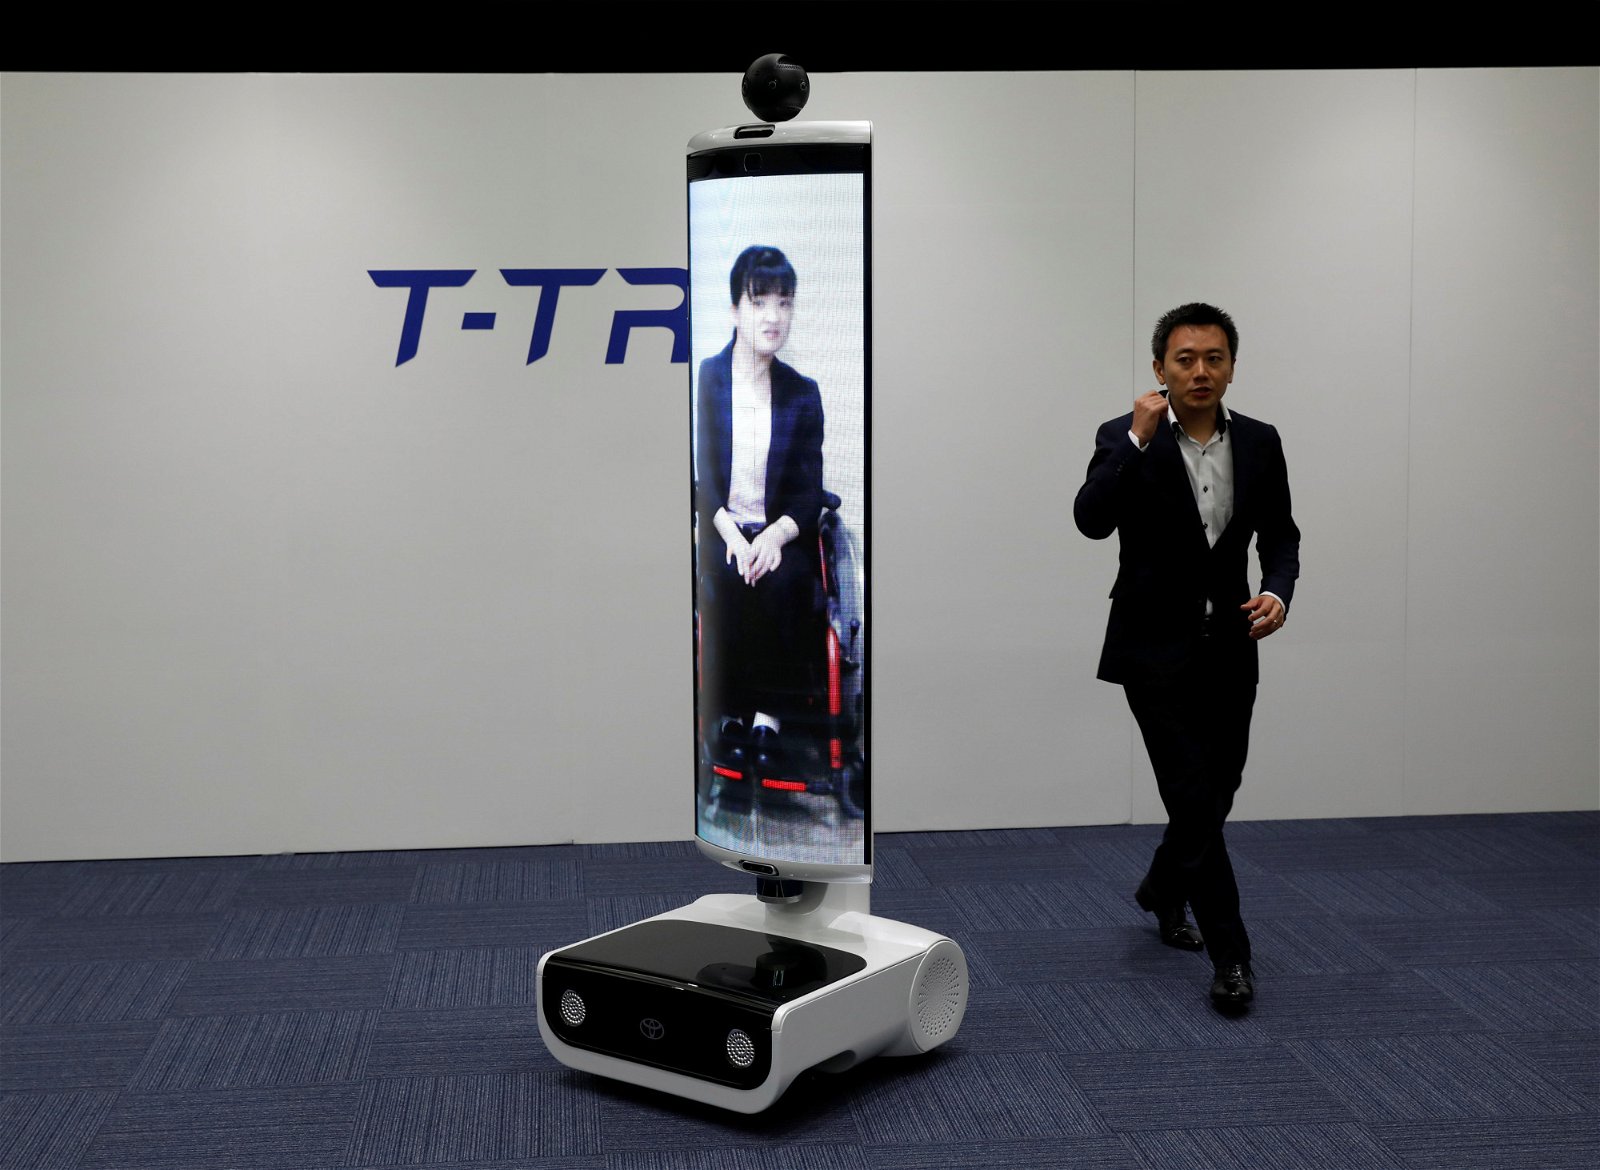 一名丰田公司的工作人员，日前展示了一个“T-TR1”远程定位通信的机器人。该款机器人将会被运用在来临的东京奥运会及残奥会。